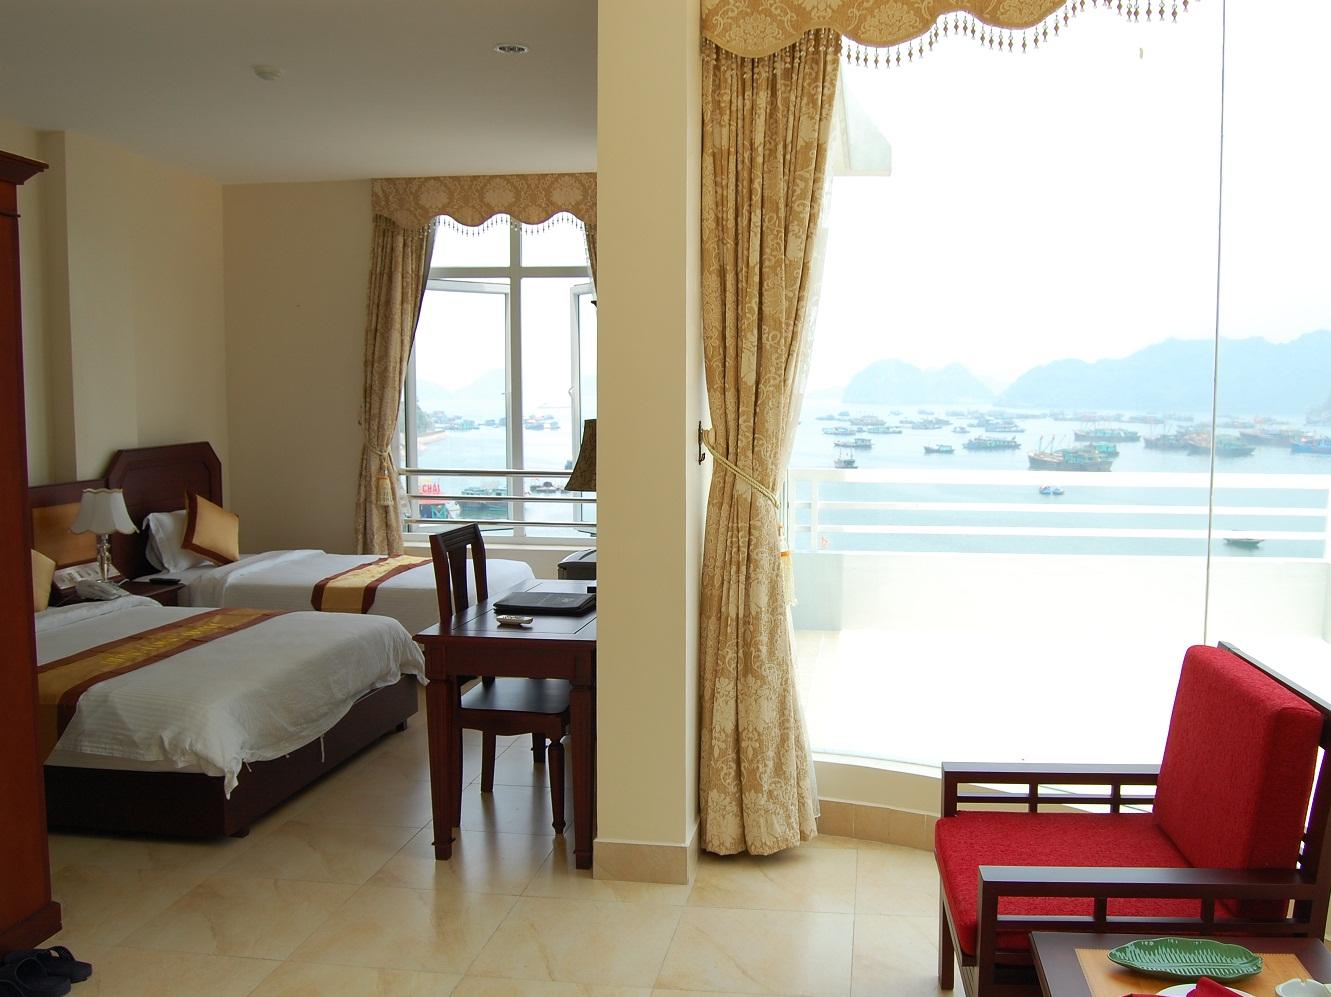 Phòng khách sạn Hùng Long Harbour mang đến một tầm nhìn hướng biển